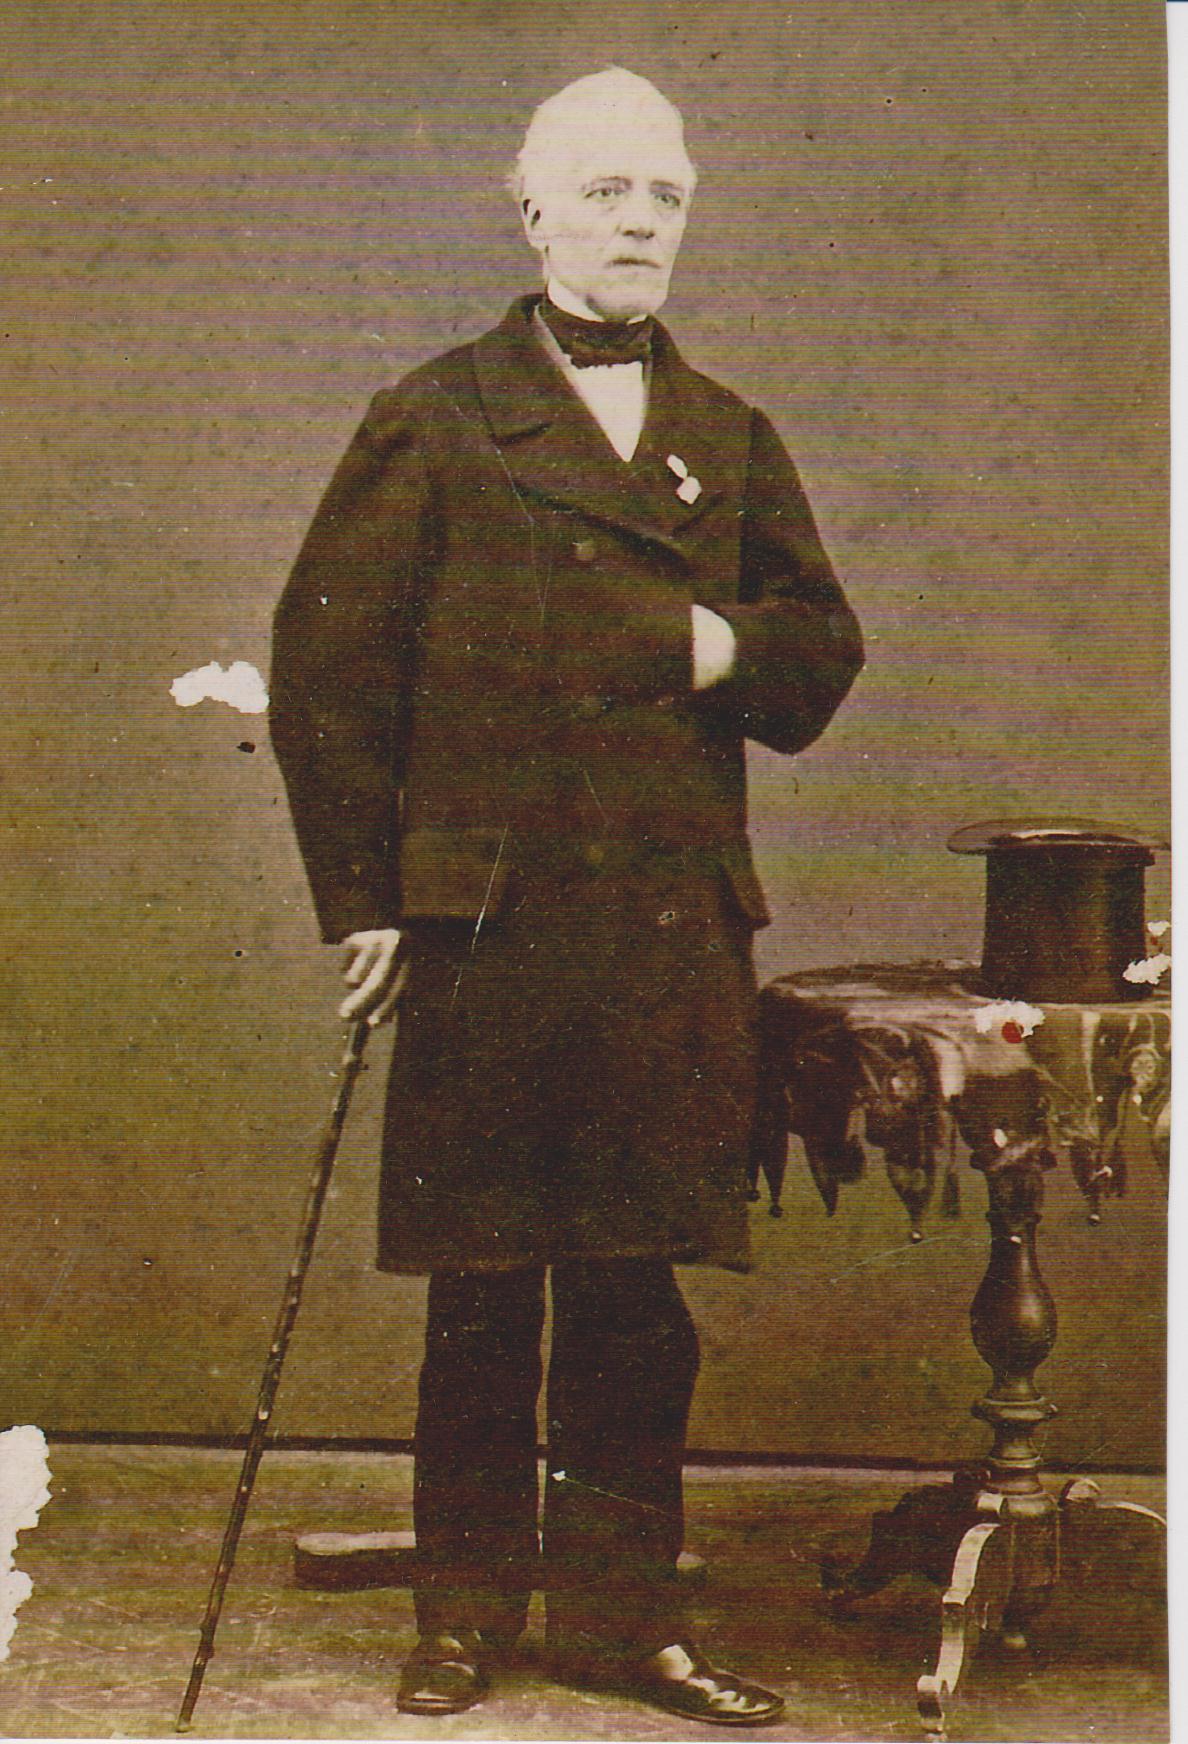 siecle de louis xiv, voltaire, 1851 - Compra venta en todocoleccion